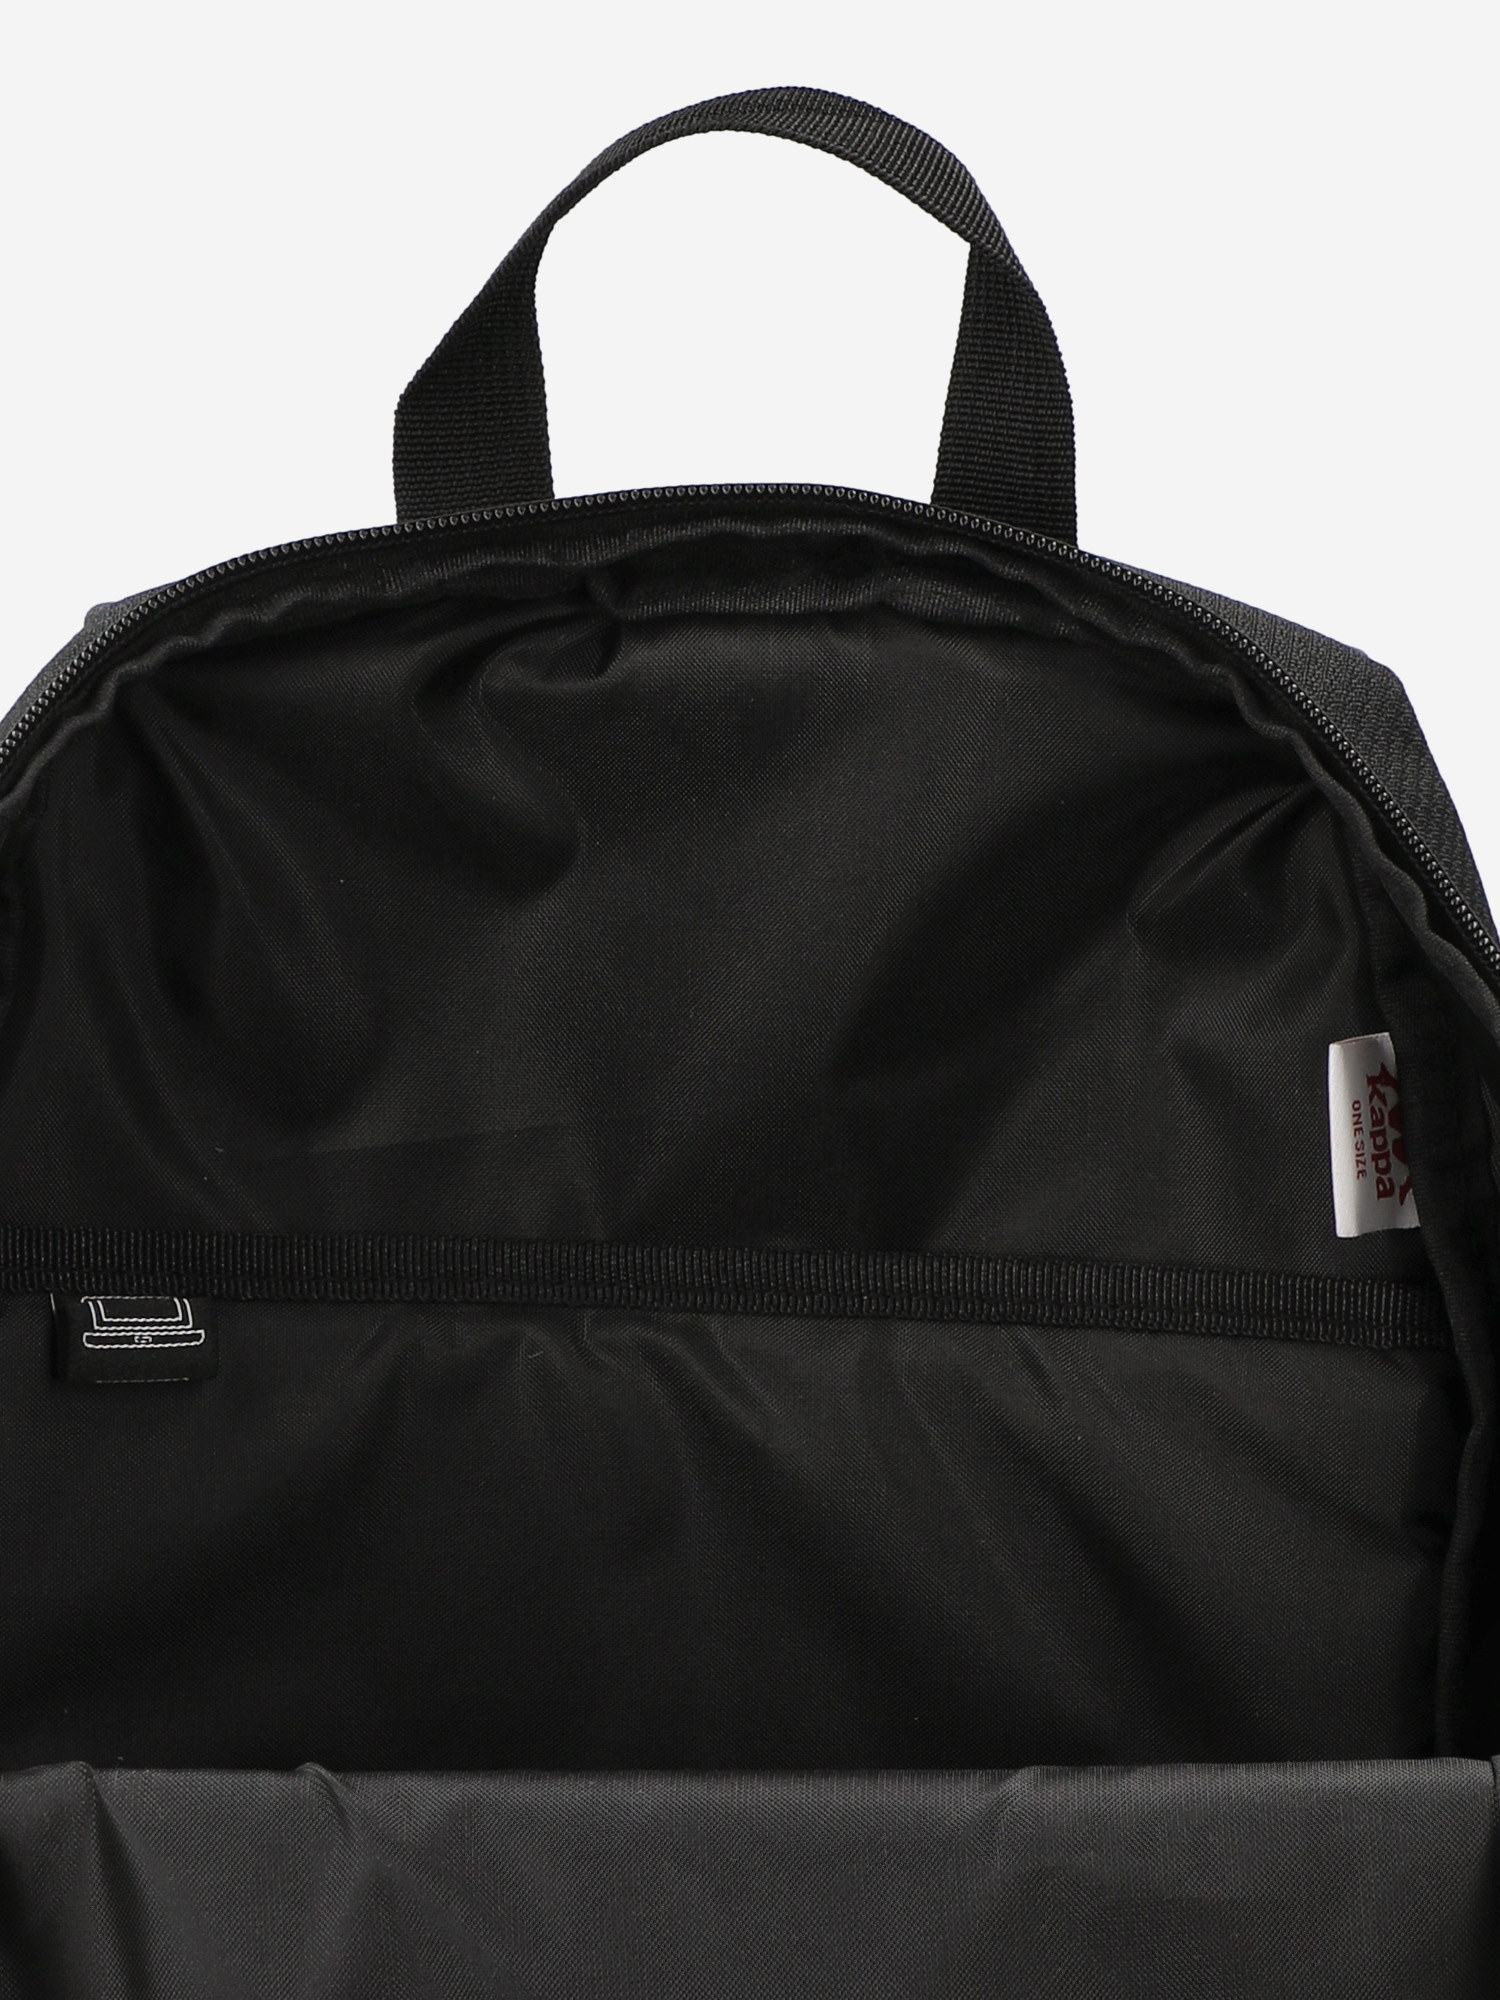 Рюкзак Kappa, Черный 125501KAP-99, размер 26 х 16 х 45 - фото 5